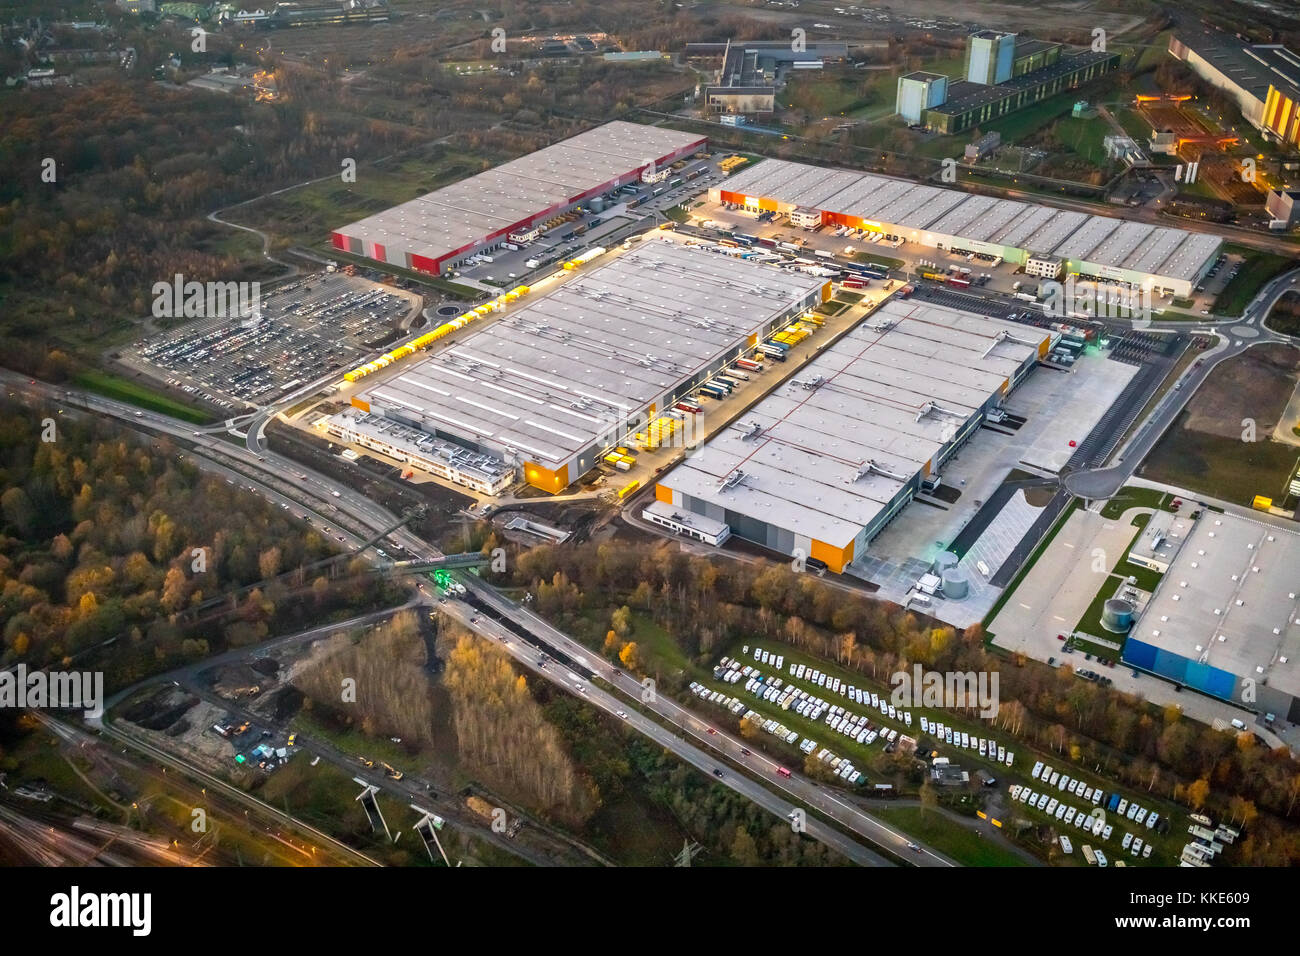 Amazon Logistikzentren im Ruhrgebiet, Logistikzentrum DTM2 in Dortmund auf  dem Gelände der ehemaligen Westfalenhütte, Amazon Logistikzentrum  Stockfotografie - Alamy